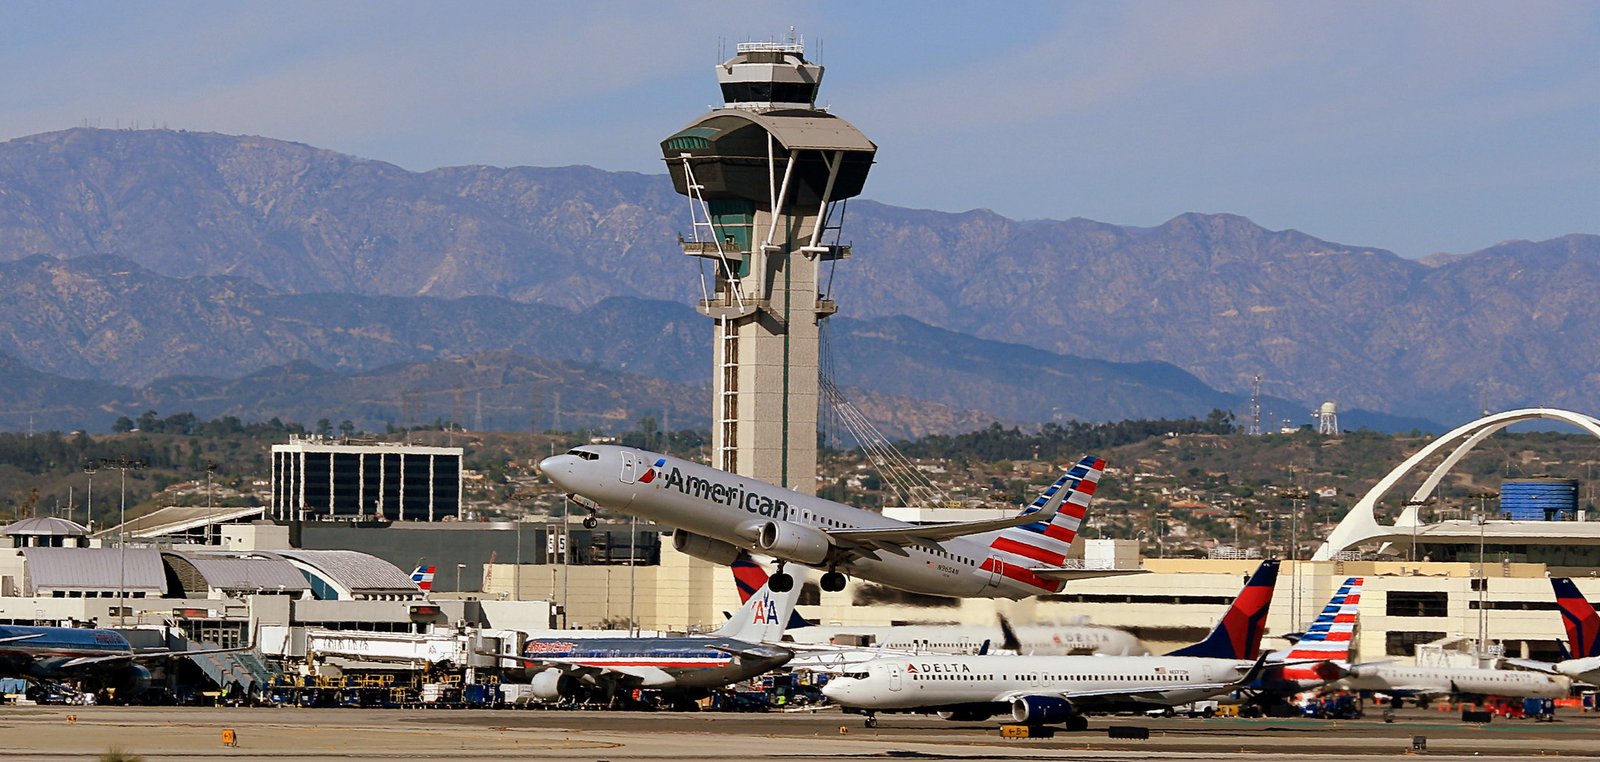 Boeing 737-800 de American Airlines despegando desde el aeropuerto de Los Ángeles. Foto: Motox810